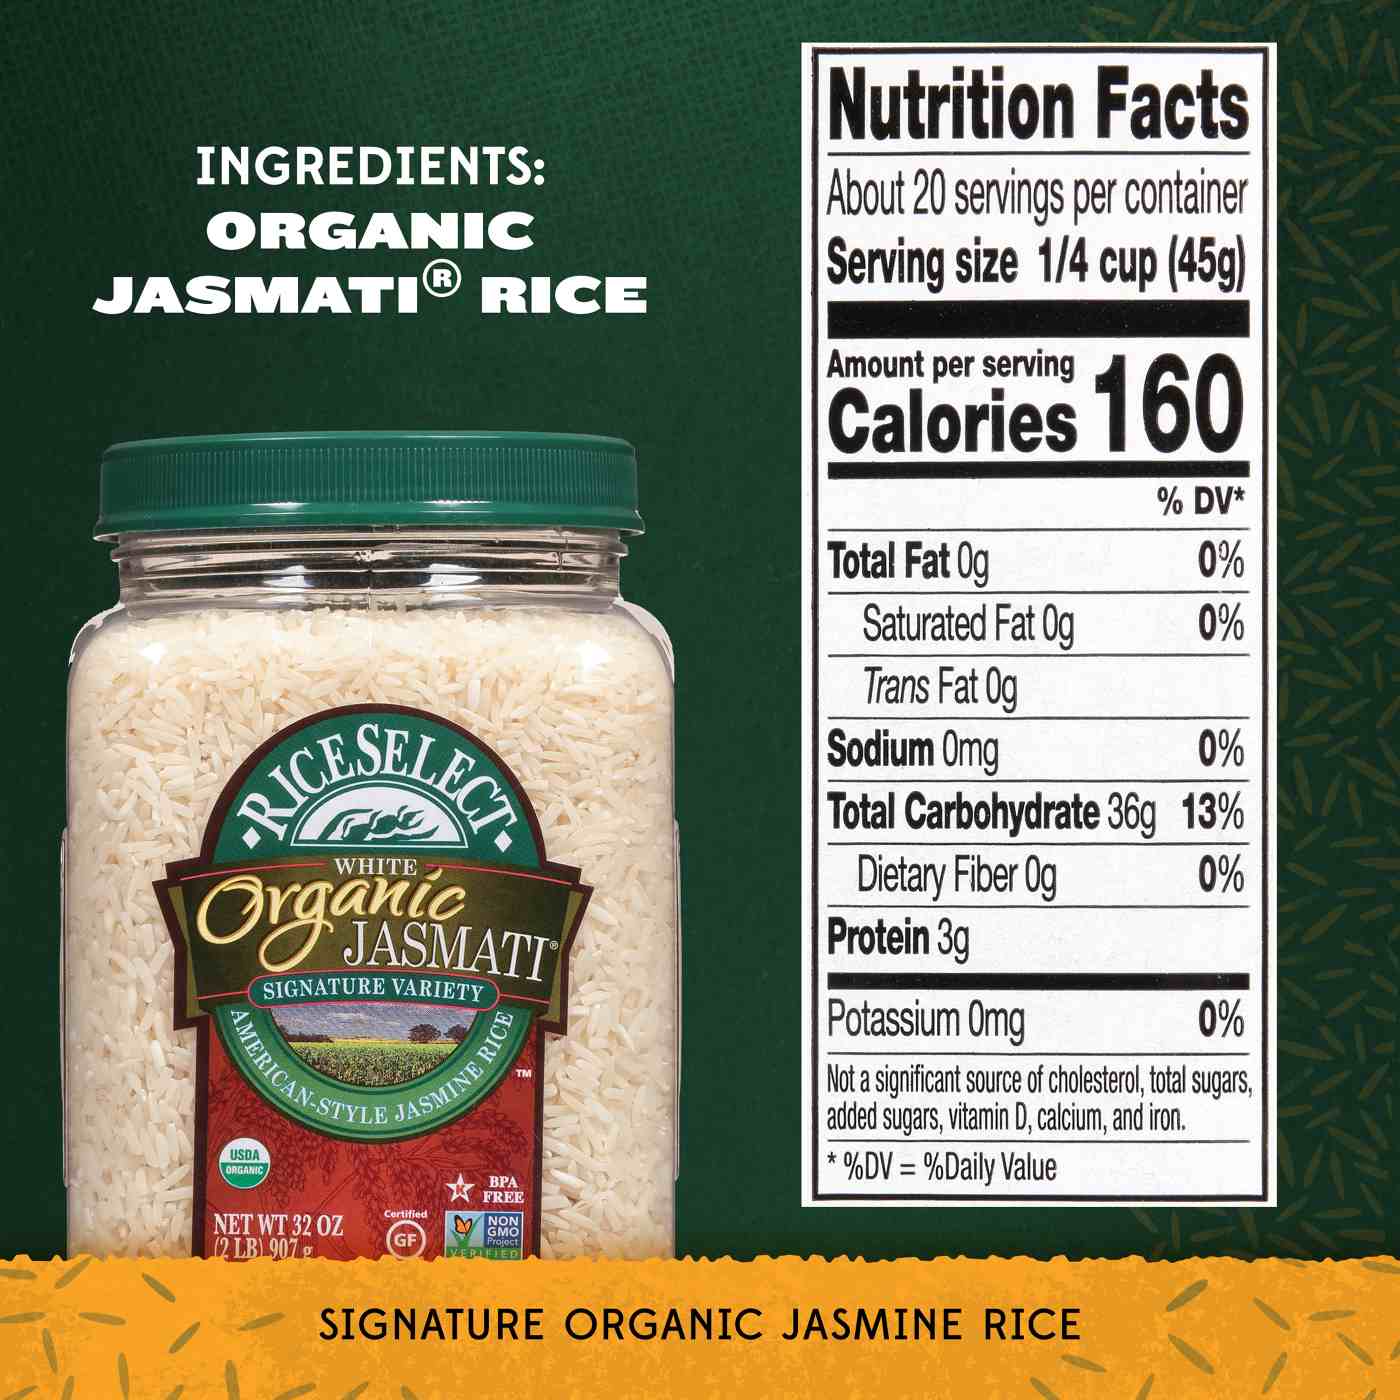 RiceSelect Organic Jasmati Rice; image 4 of 5